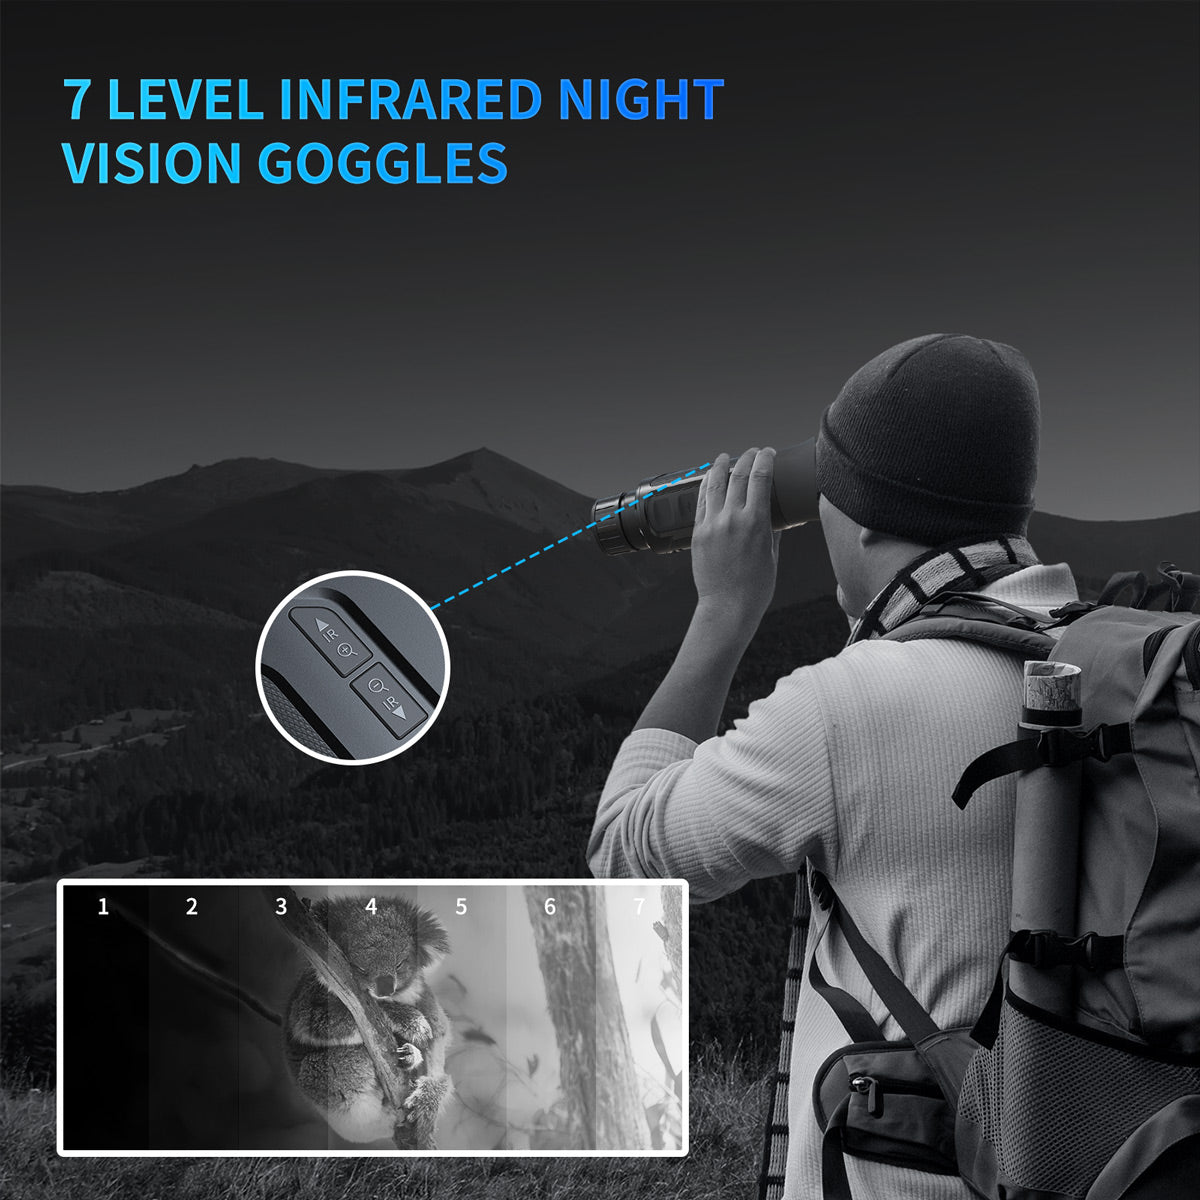 Campark NV100 Infrarot-Fernglas mit 4-fach optischem Zoom und Nachtsicht